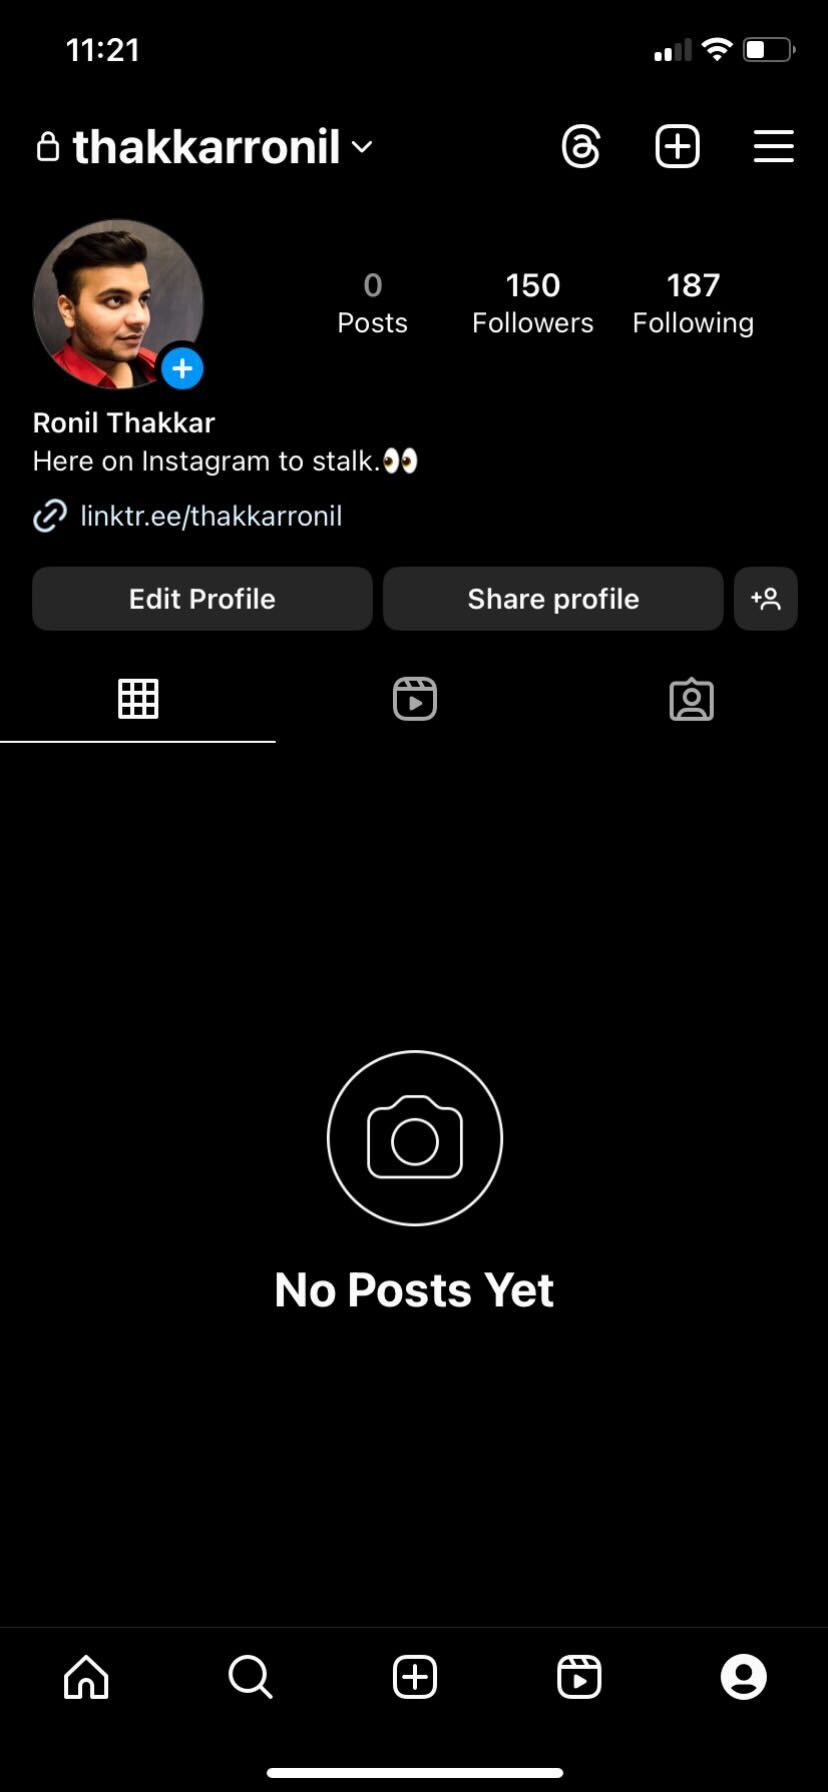 Profil na Instagramie